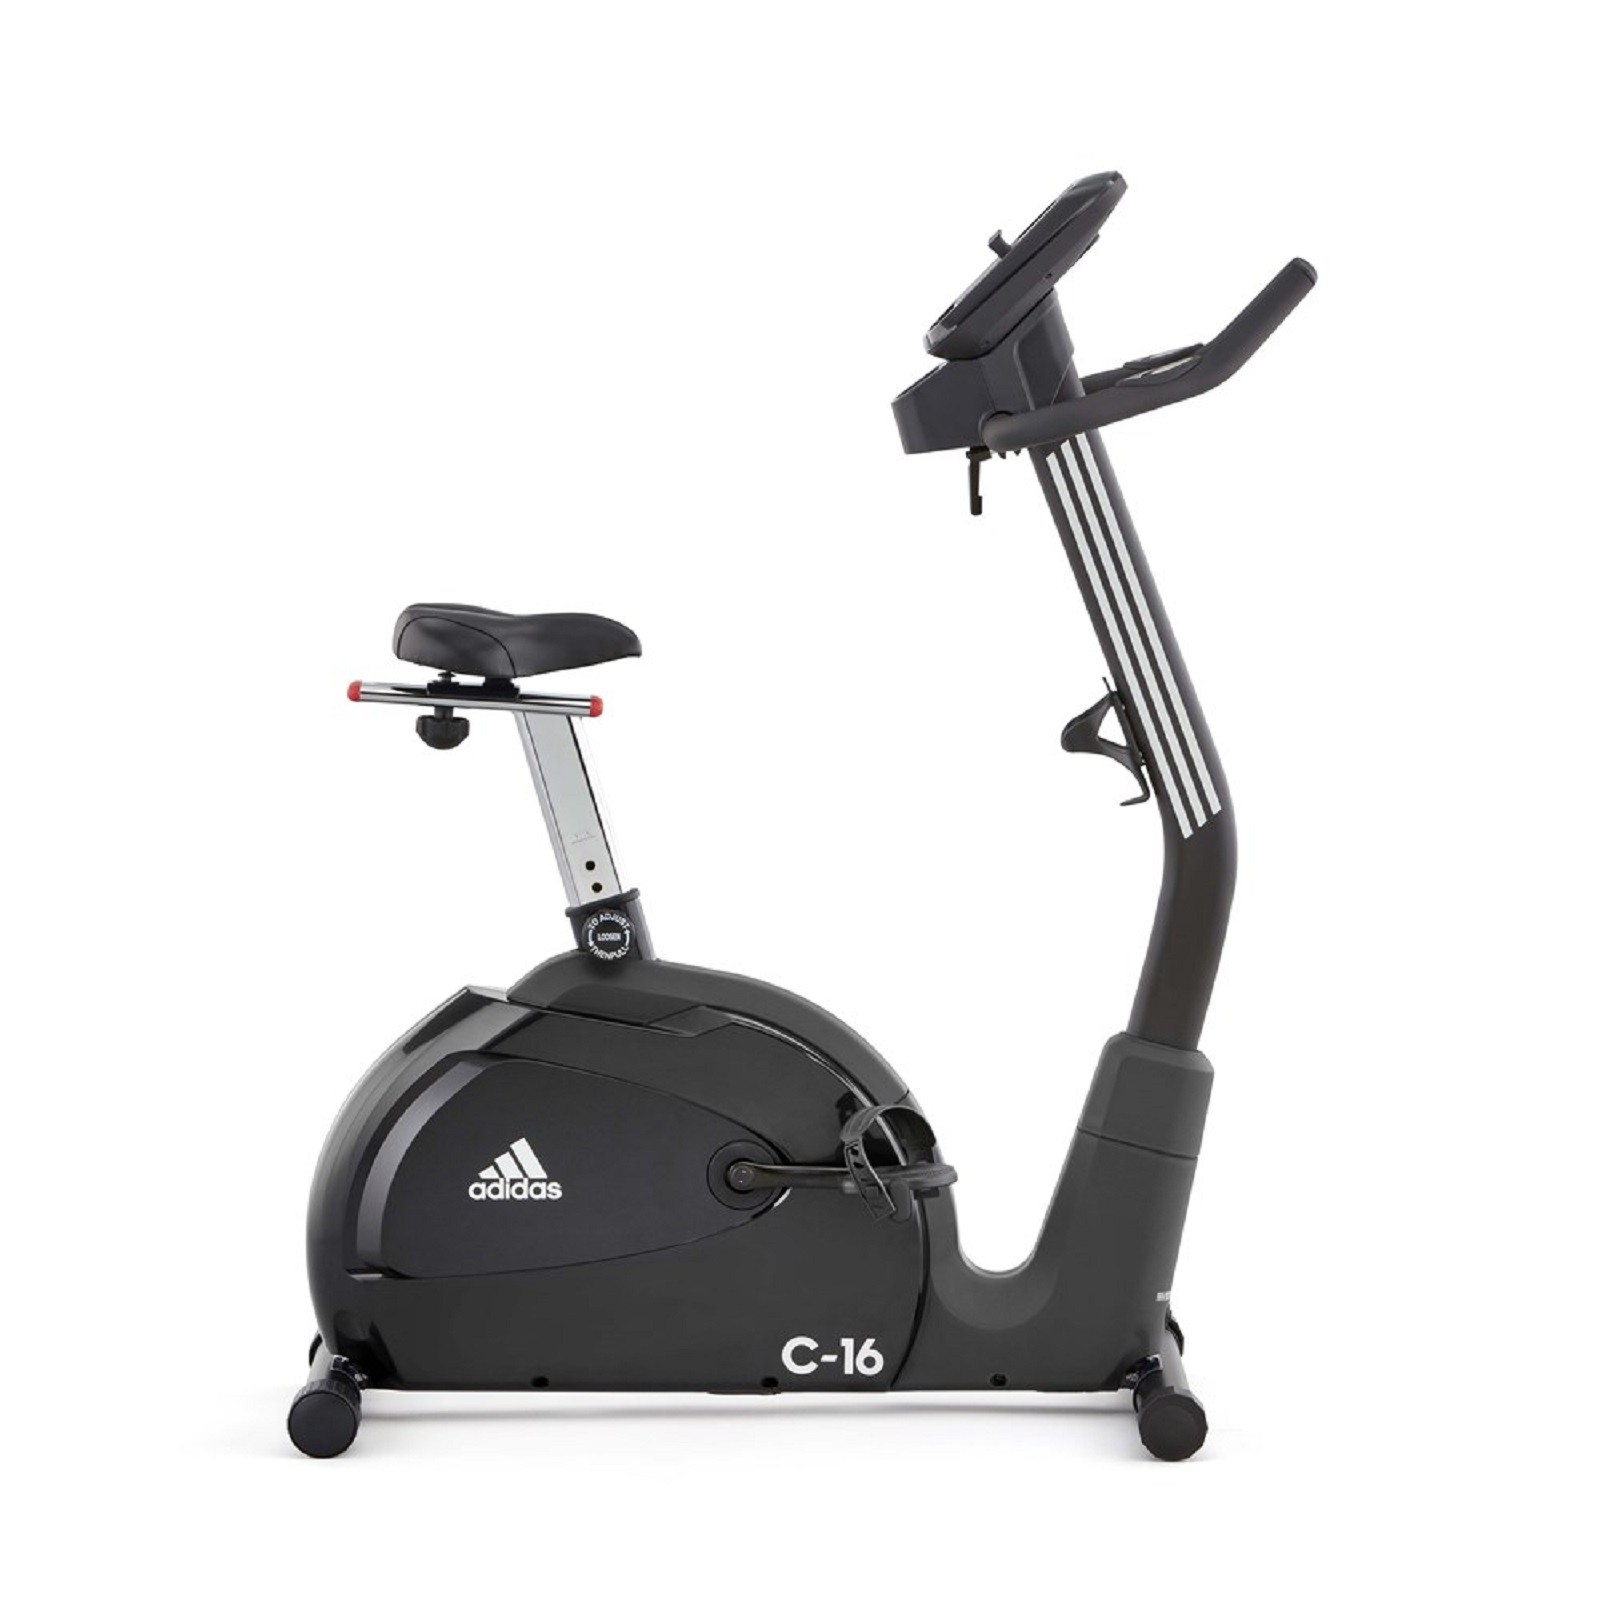 adidas c 16 exercise bike